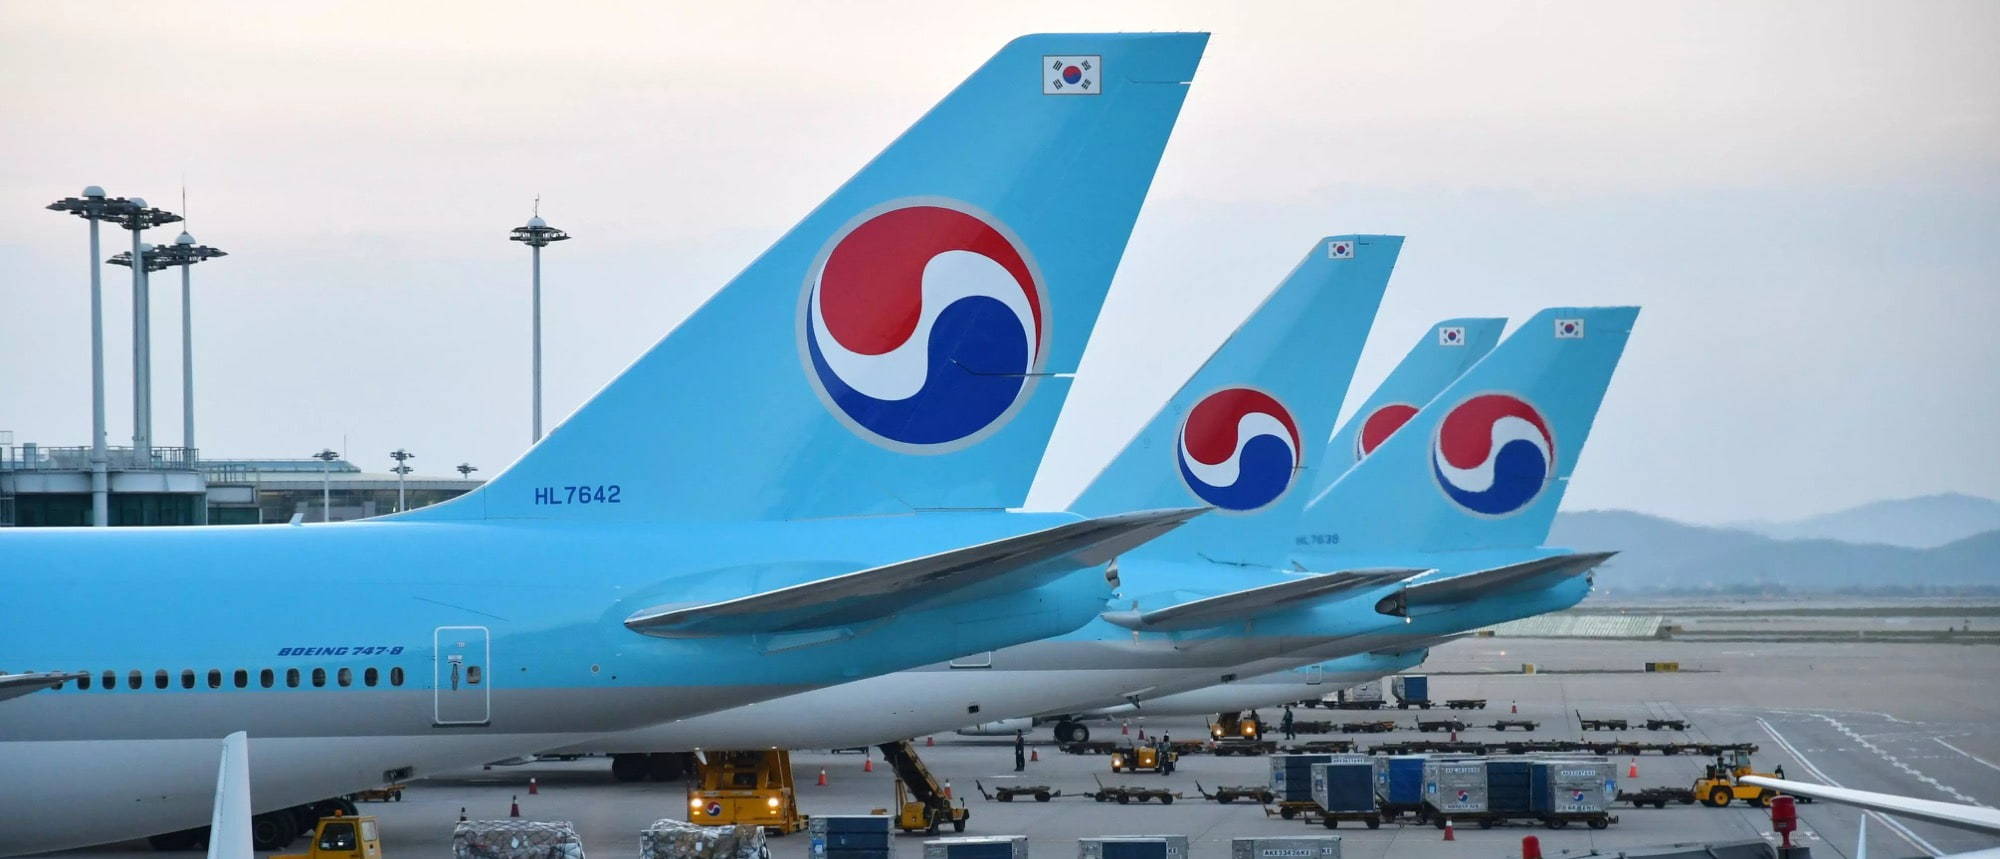 Korean Air A330 Jobs | Boeing 747 Loading on Tarmac